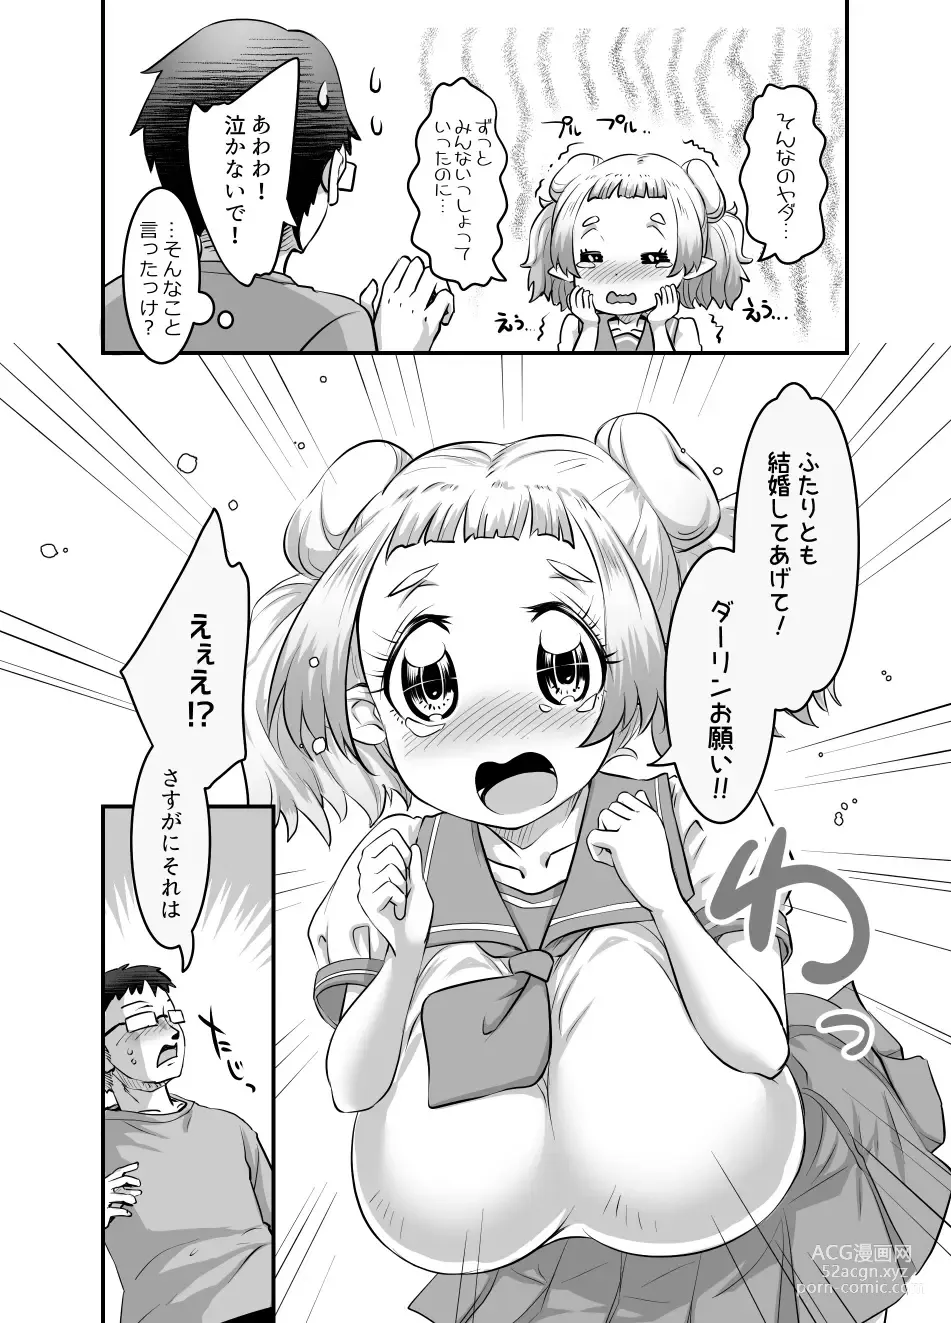 Page 253 of doujinshi Oppai Loli Elf-chan no Konkatsu